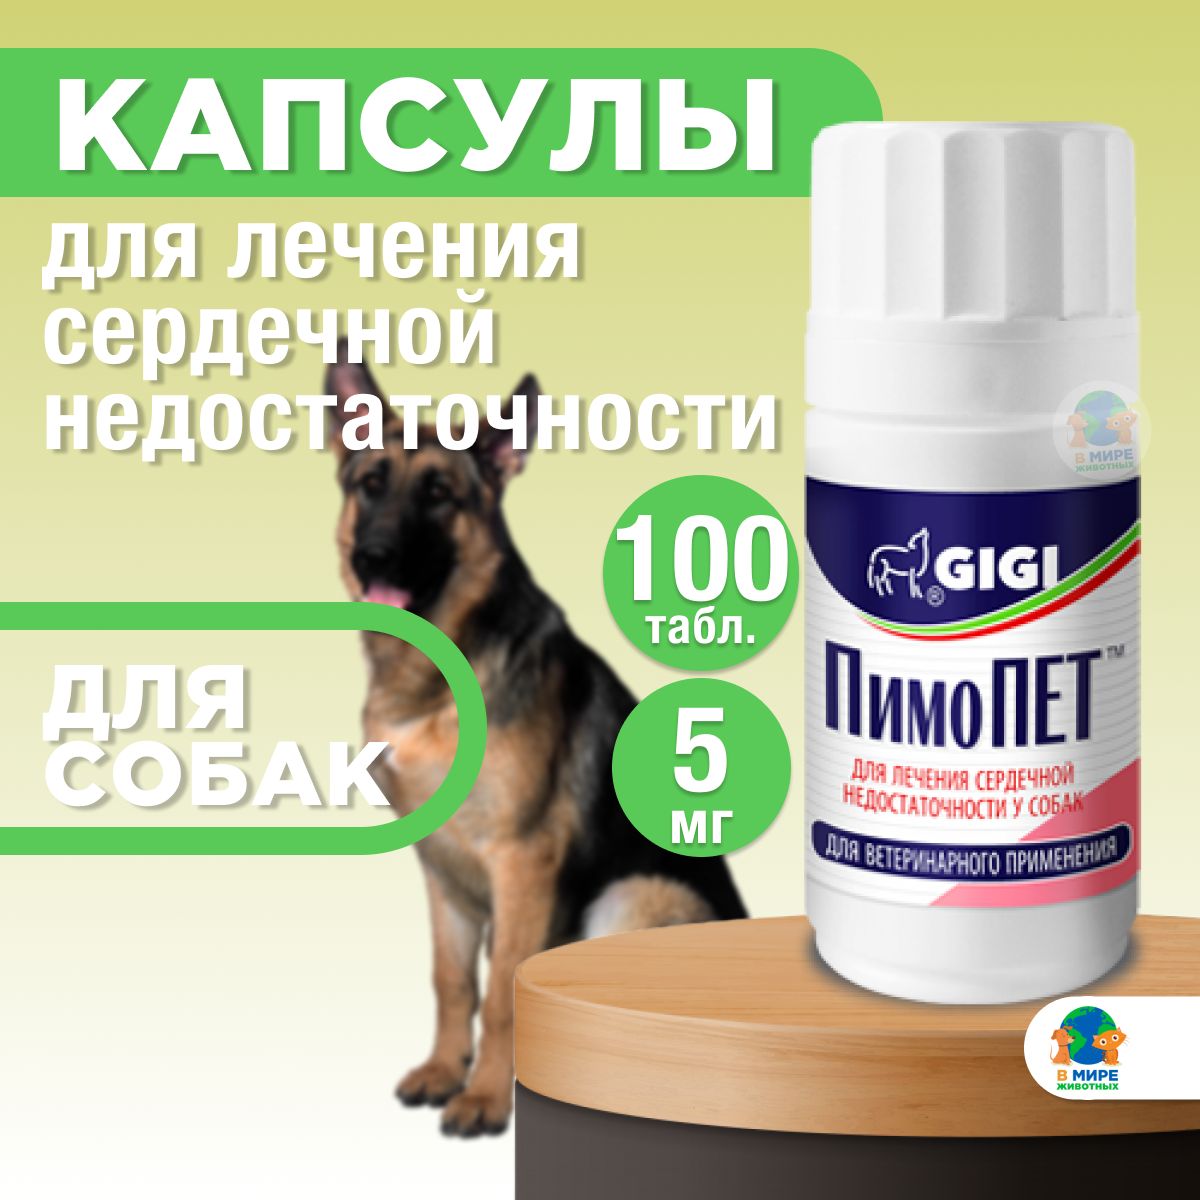 ПИМОПЕТ. ПИМОПЕТ 10 мг. Пимопет5 жья собак. ПИМОПЕТ дозировка для собак. Пимопет для собаки купить